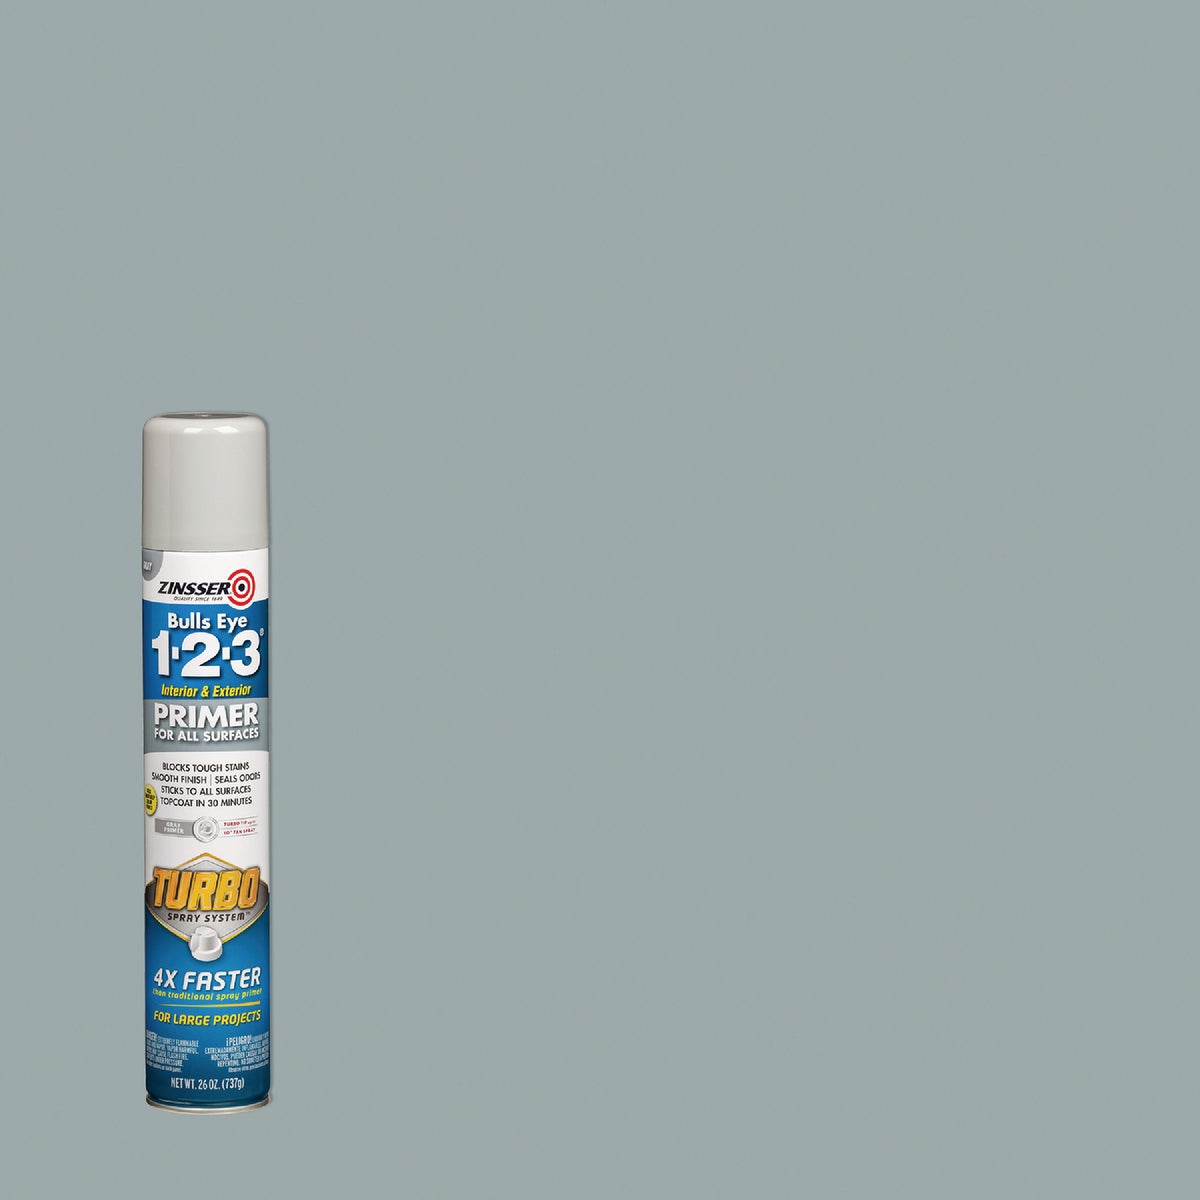 Zinsser 26 Oz. Bulls Eye 1-2-3 Primer Spray with Turbo Spray System, Flat Gray